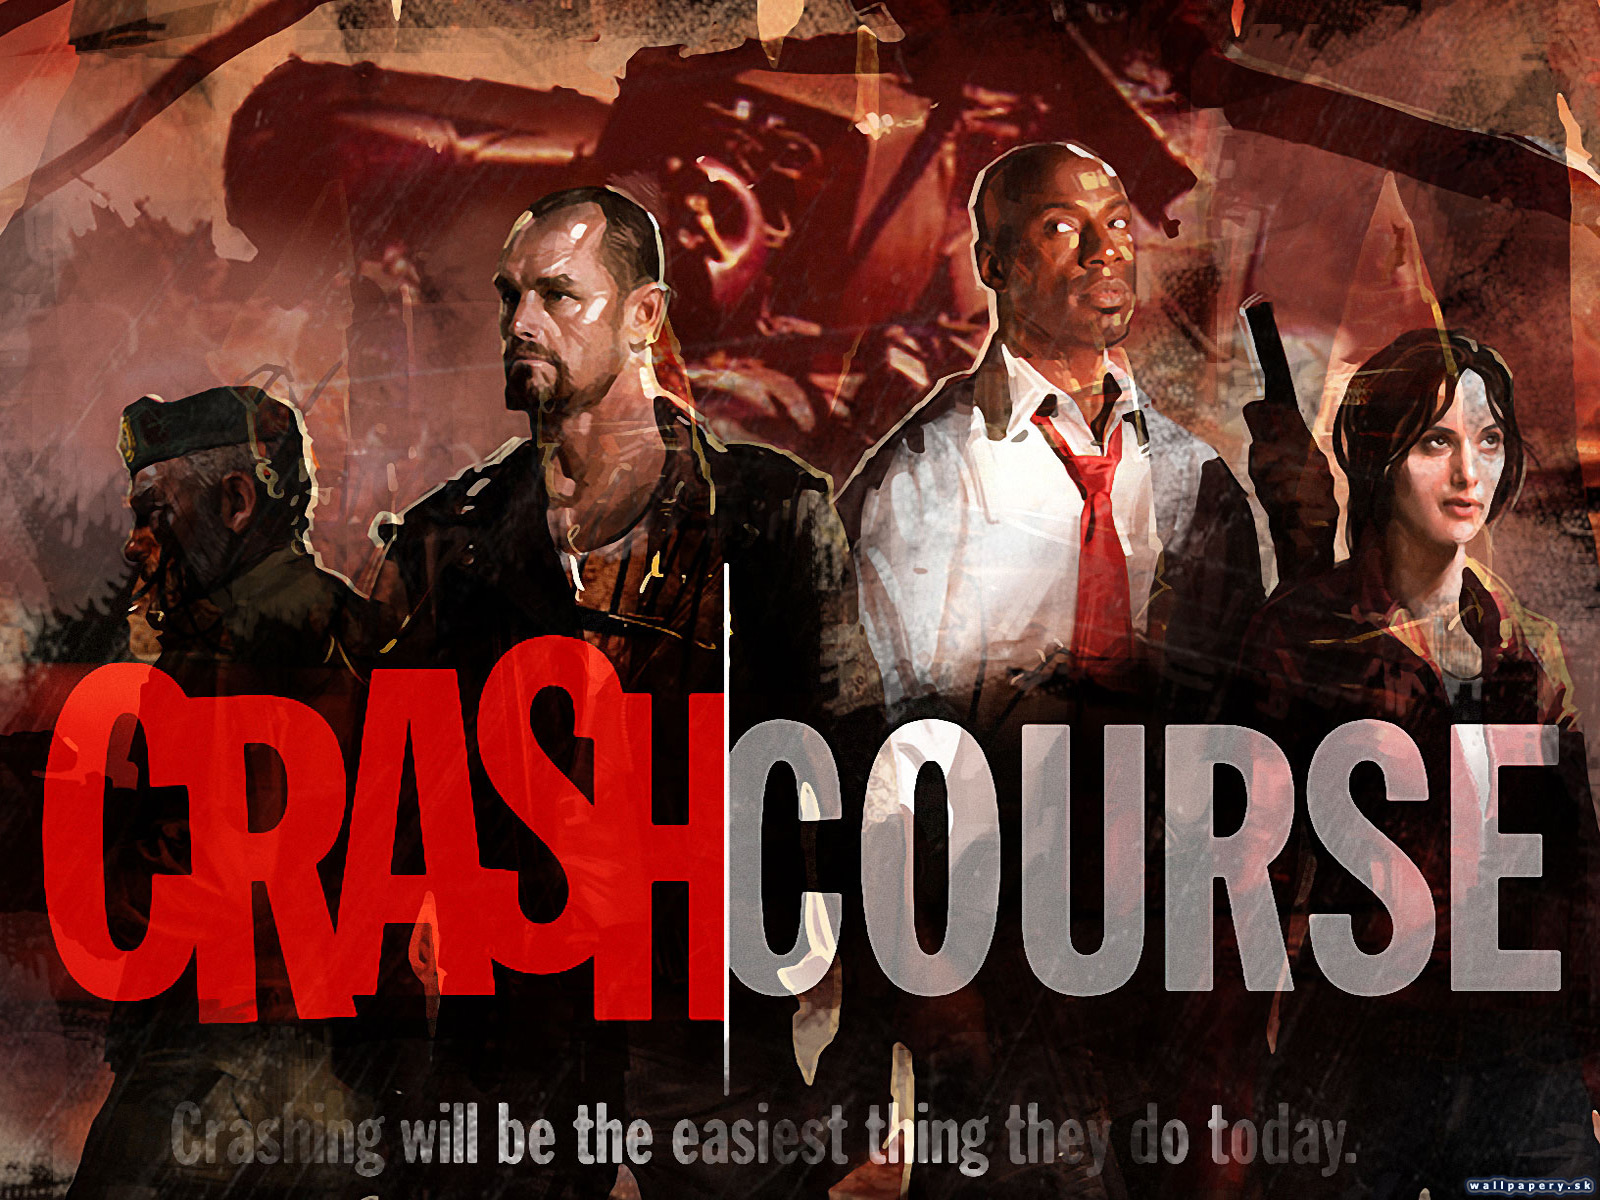 Left 4 Dead: Crash Course - wallpaper 1